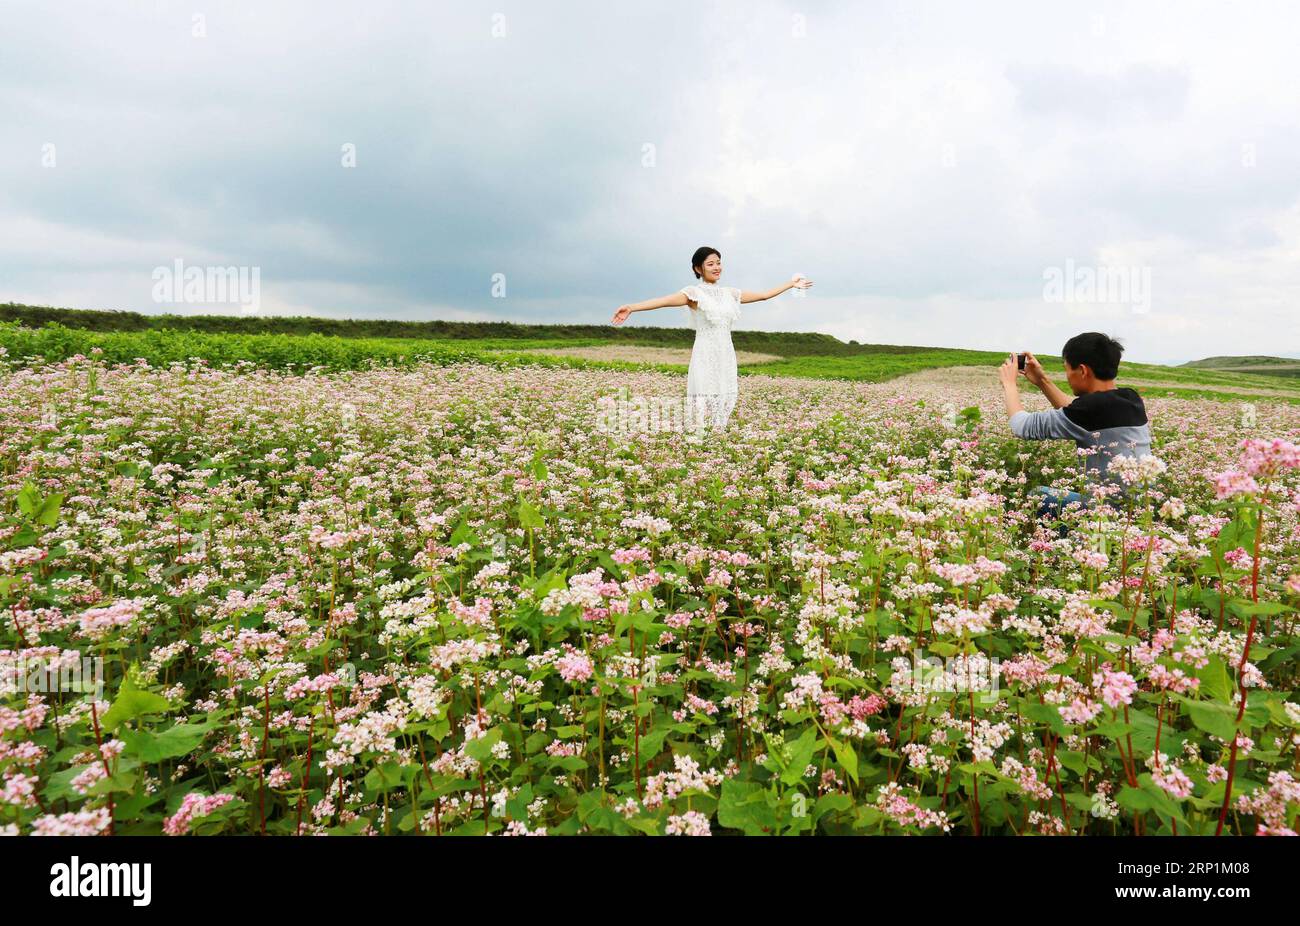 (180713) -- BIJIE, 13. Juli 2018 (Xinhua) -- Ein Tourist posiert für Fotos in einem Buchweizenfeld im Weining County, südwestchinesische Provinz Guizhou, 12. Juli 2018. Die Landschaft mit Buchweizenblüten zog viele Besucher an. (Xinhua/He Huan)(gxn) CHINA-GUIZHOU-BIJIE-BUCHWEIZEN-LANDSCHAFT(CN) PUBLICATIONxNOTxINxCHN Stockfoto